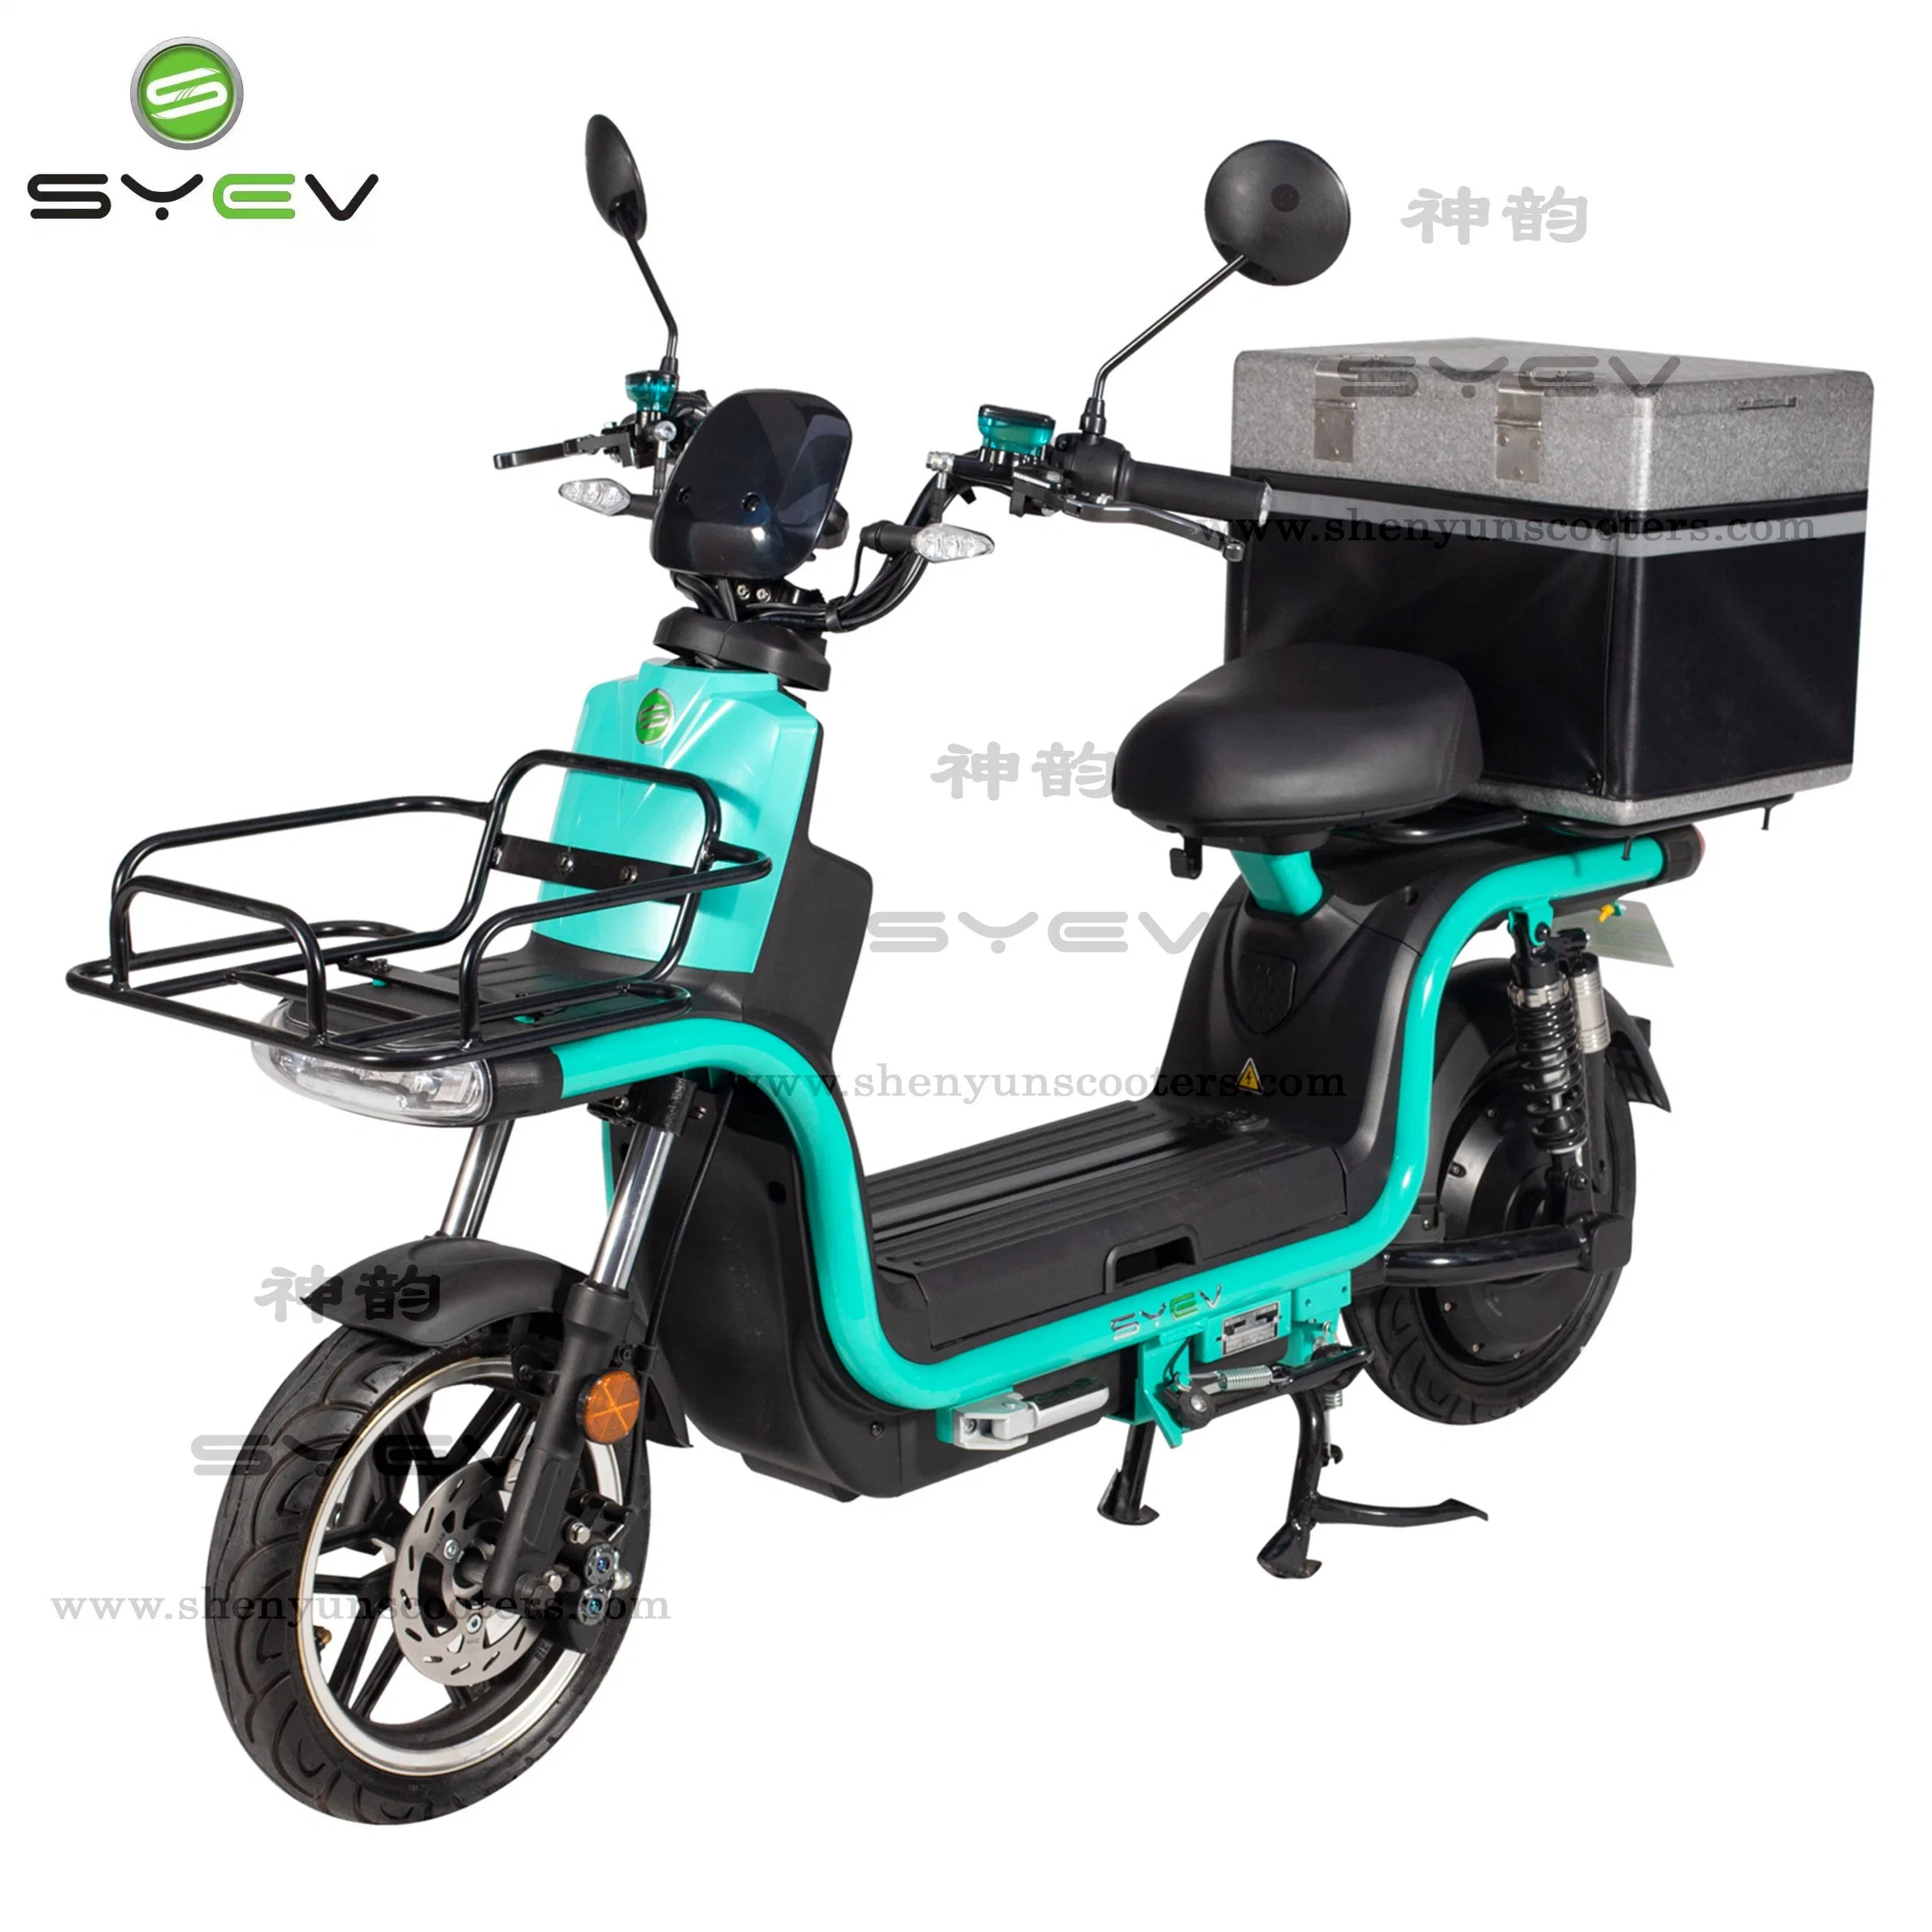 Motocicleta eléctrica potente aprobada por CE/CEE/Coc para la entrega rápida de alimentos